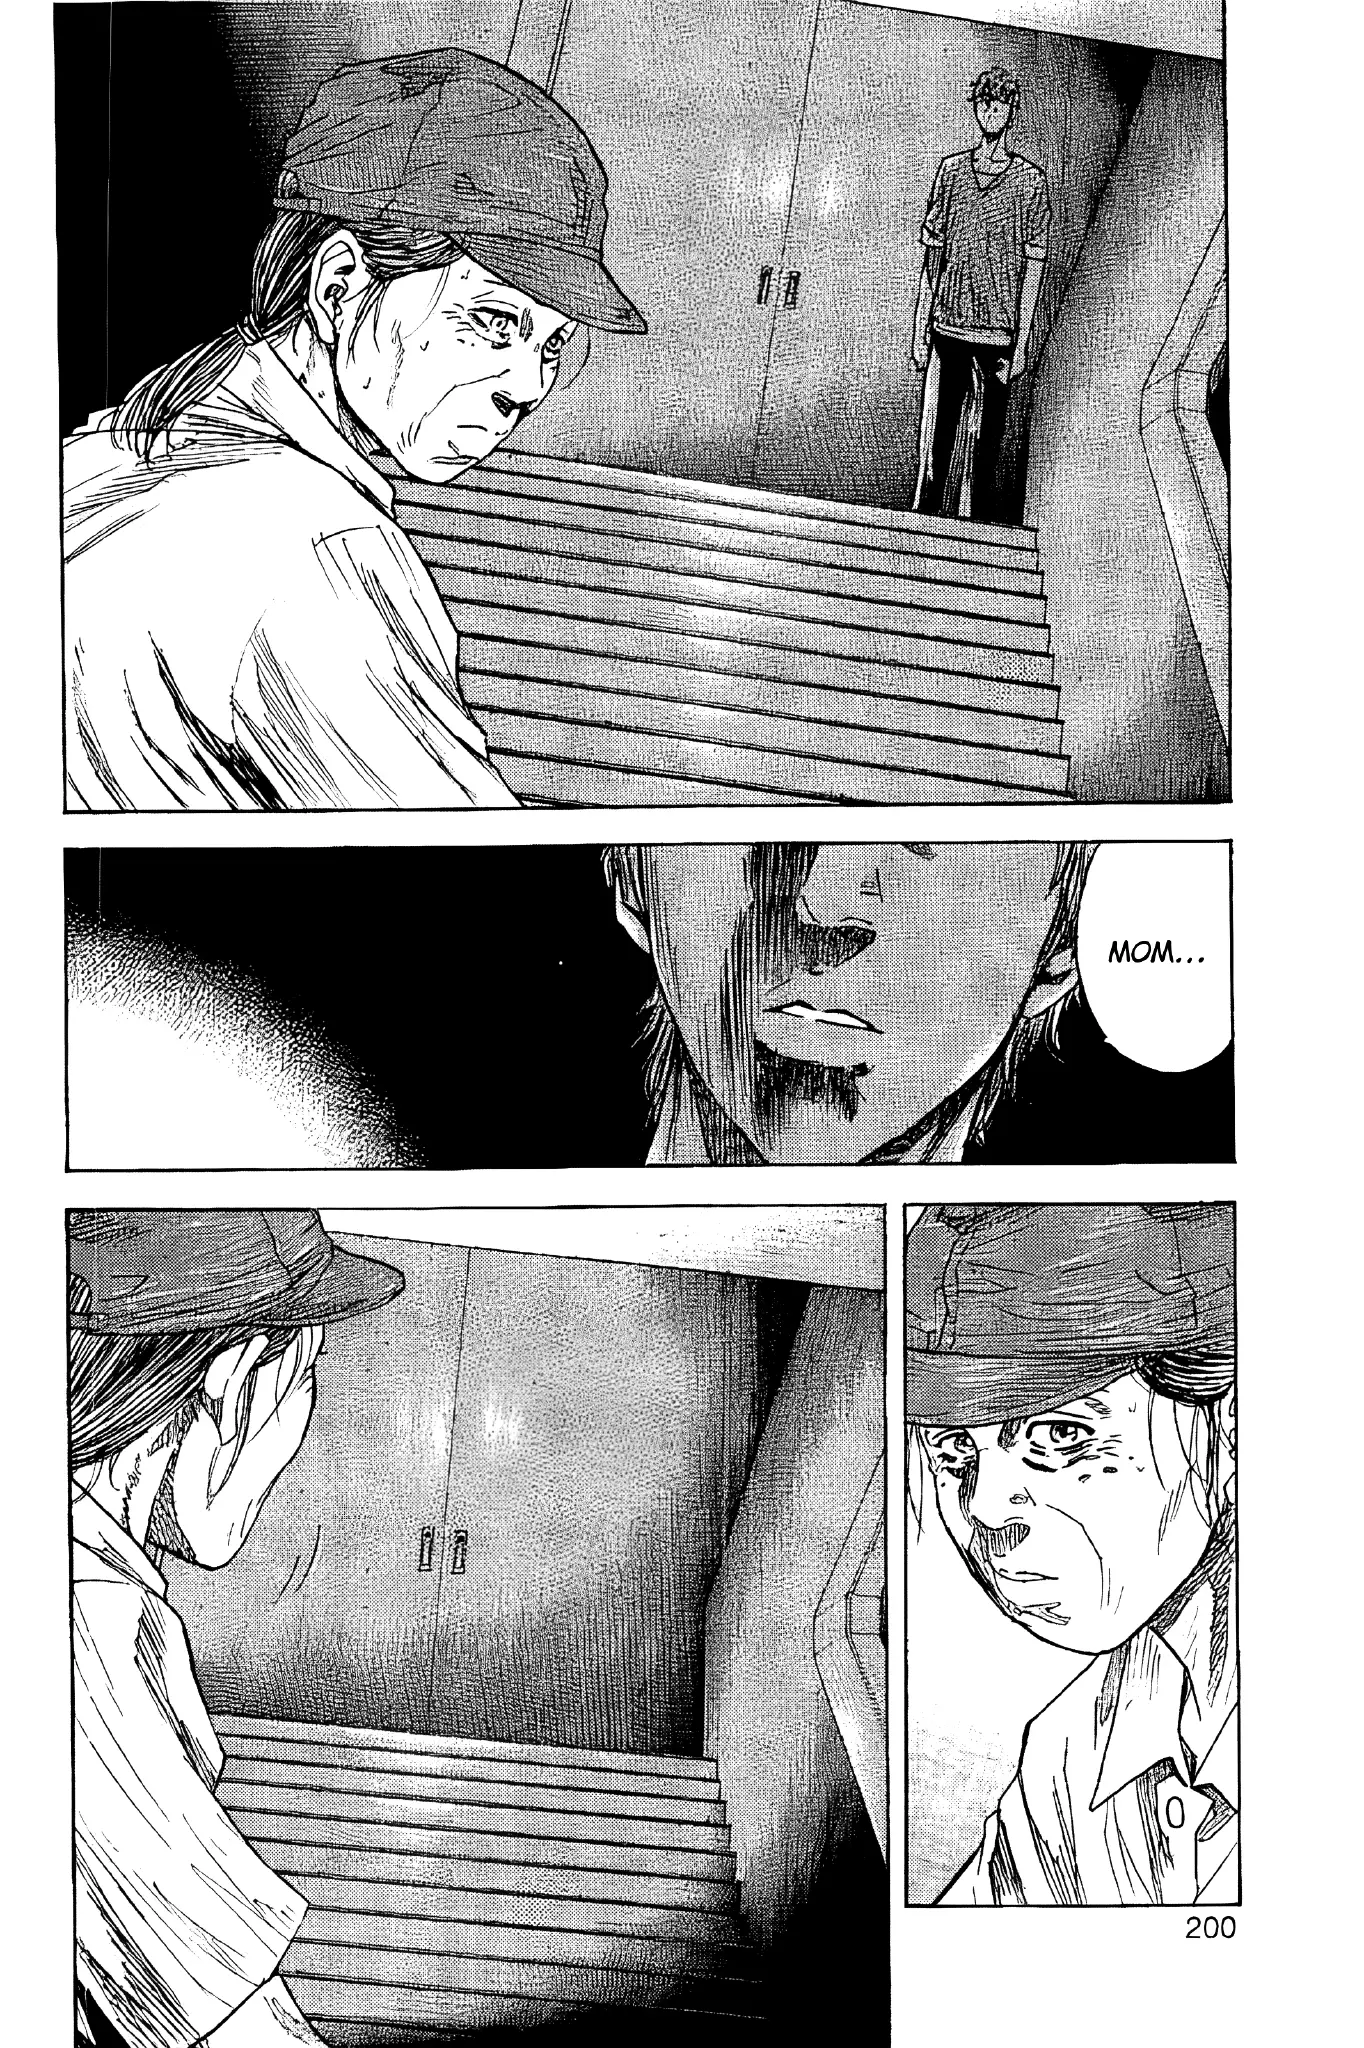 Yokokuhan - The Copycat - 5 page 30-1be80caa